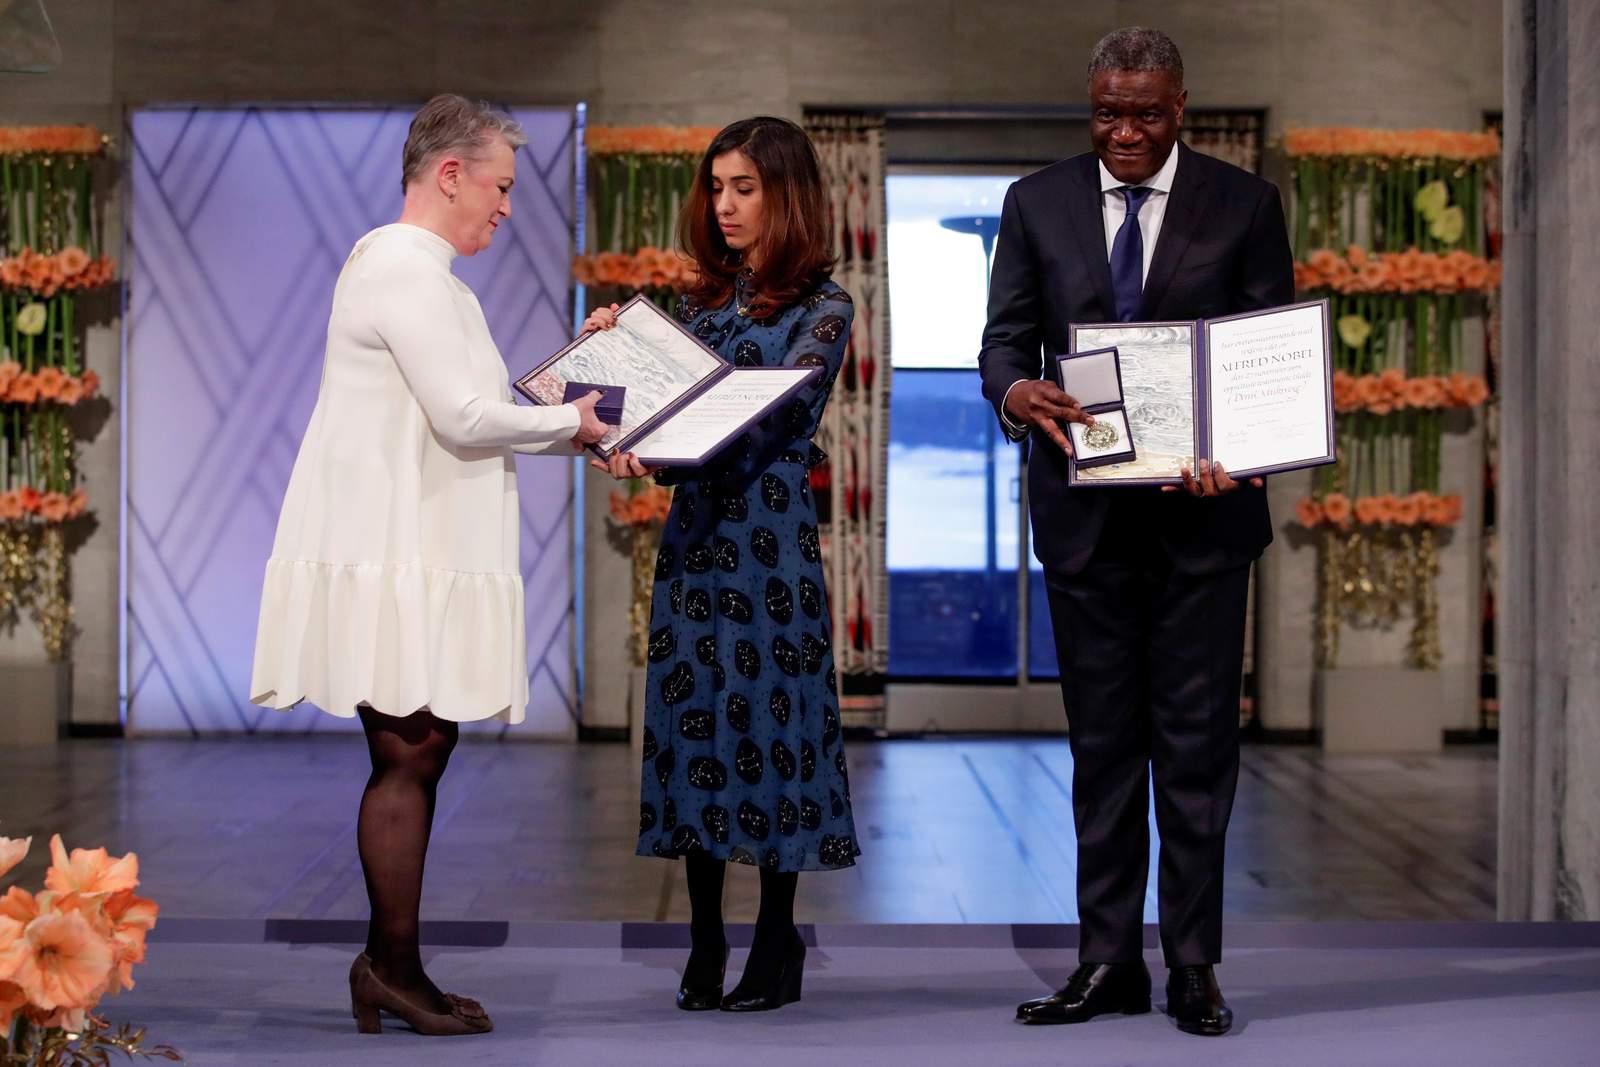 Murad recibió este lunes el Premio Nobel de la Paz conjuntamente con el médico congoleño Mukwege por “sus esfuerzos para poner fin al uso de la violencia sexual como arma de guerra”. (EFE)